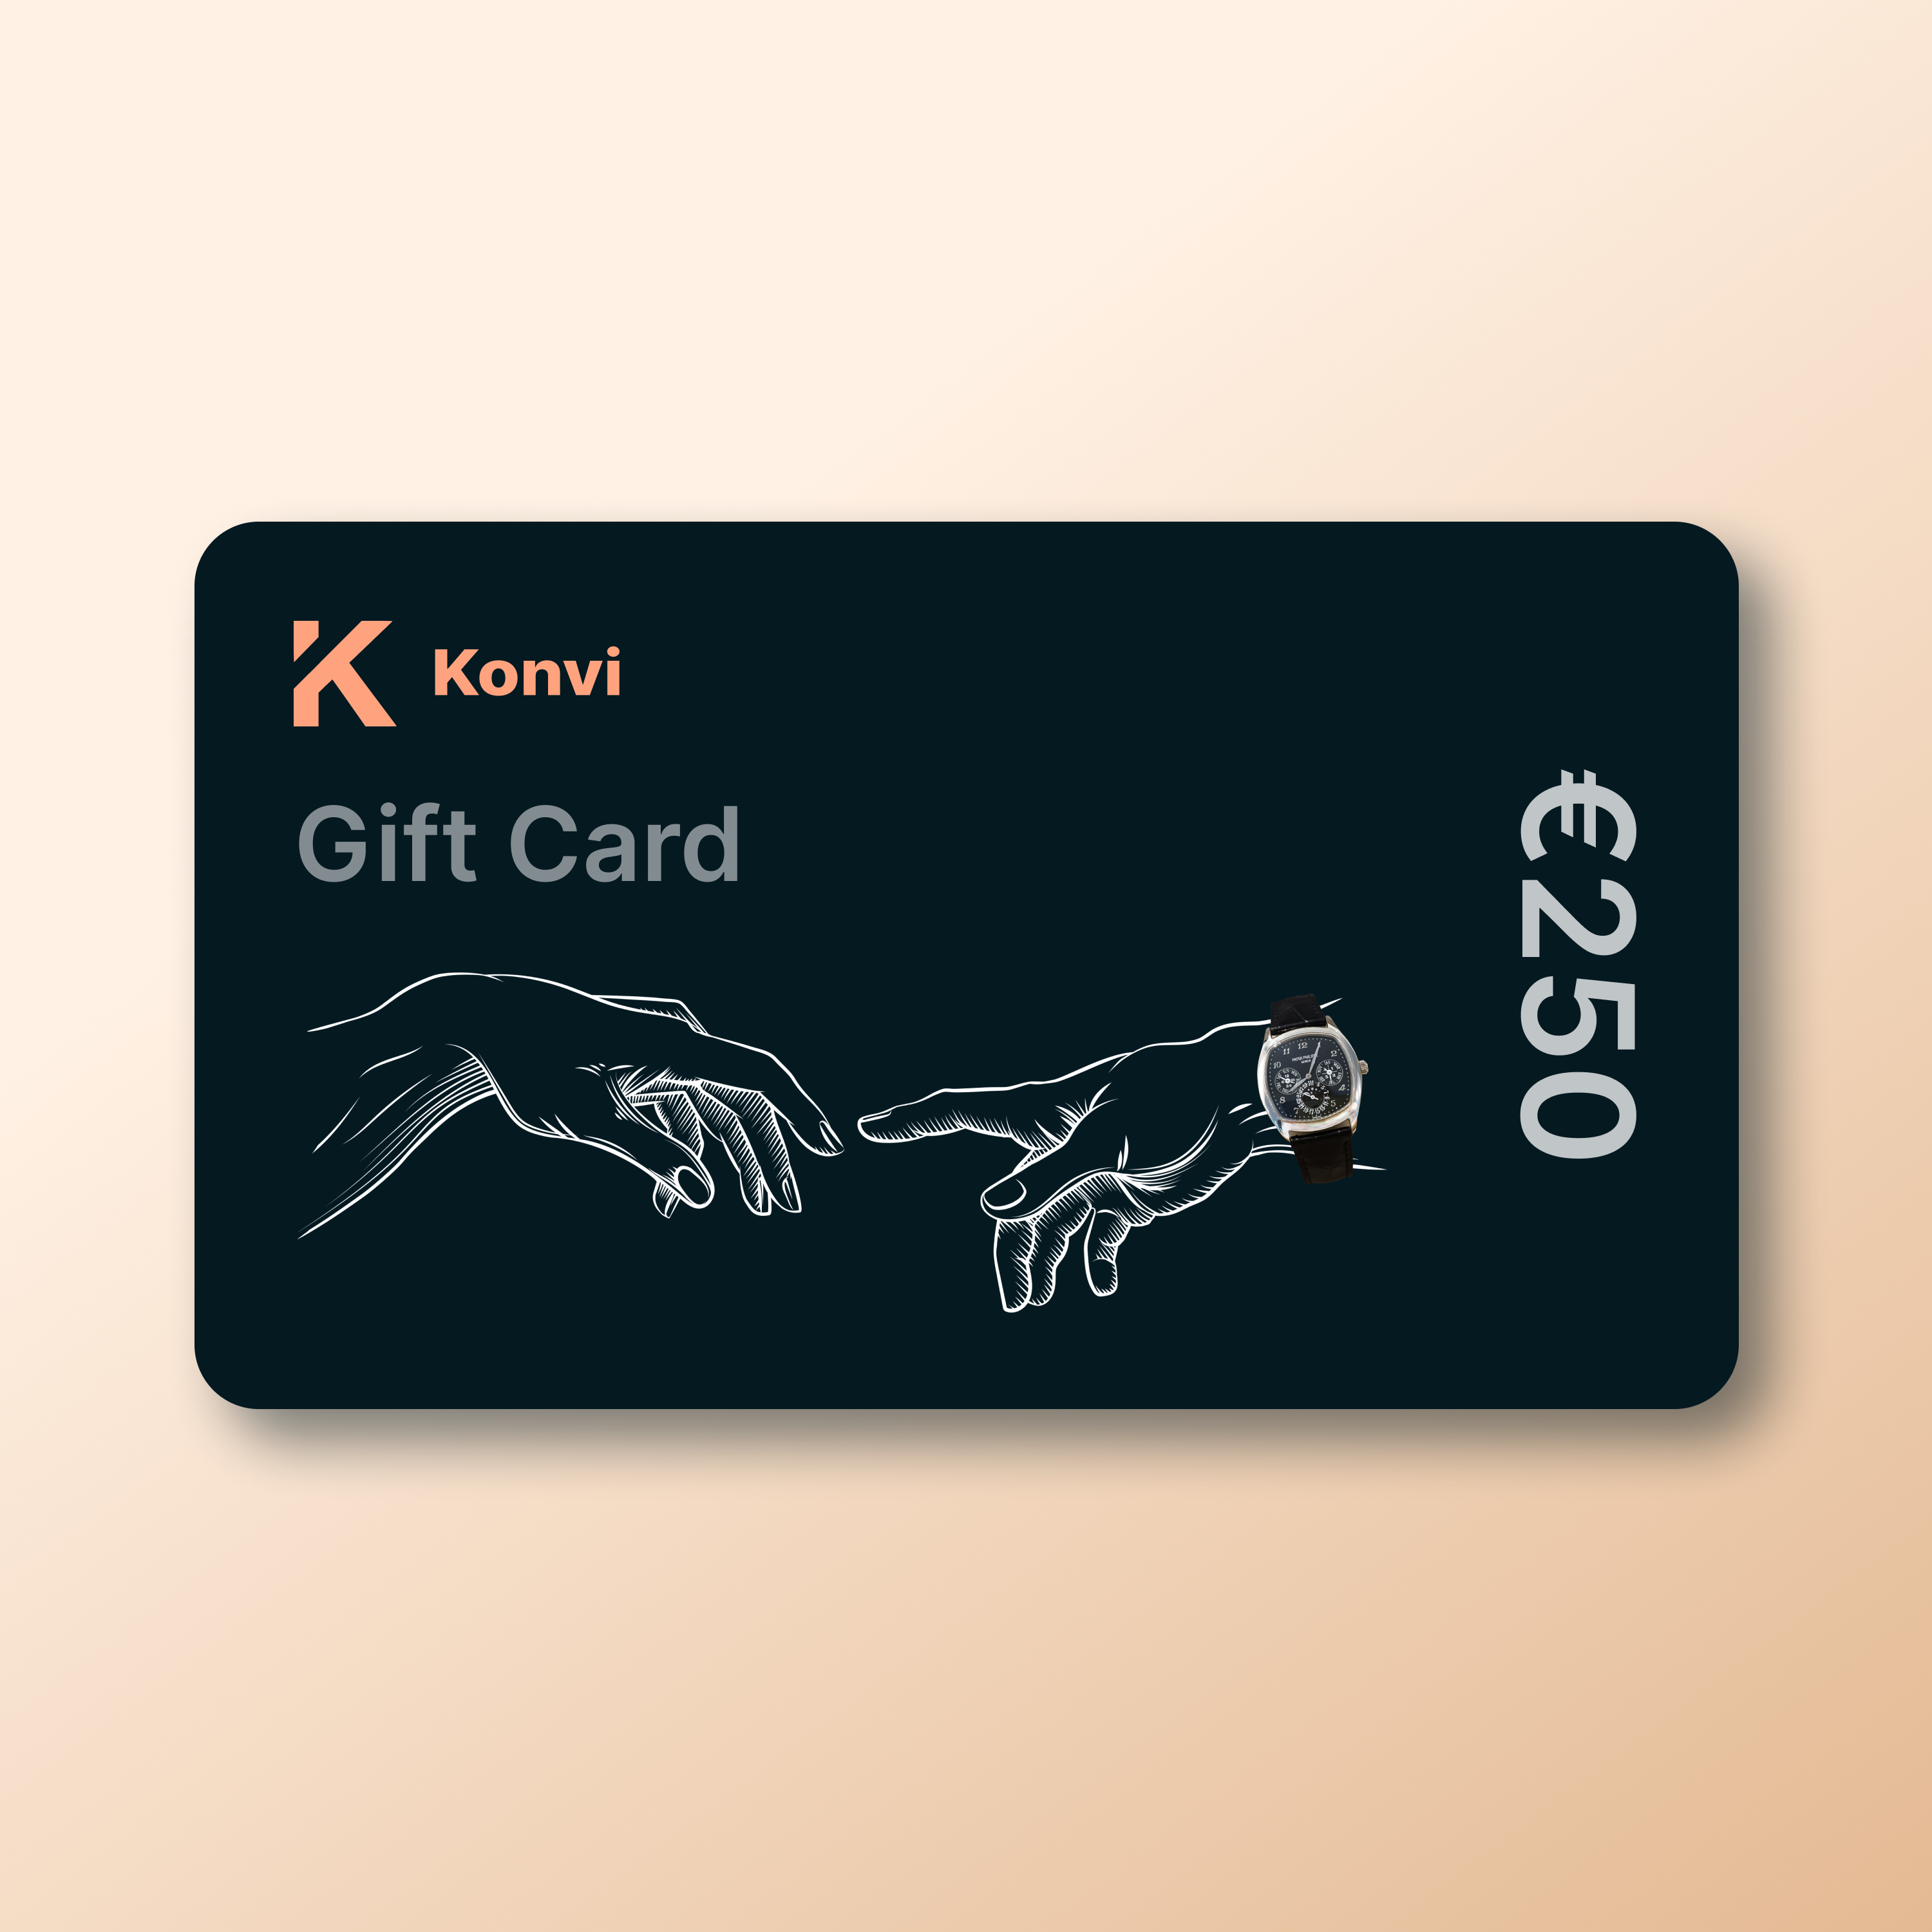 Konvi App gift card